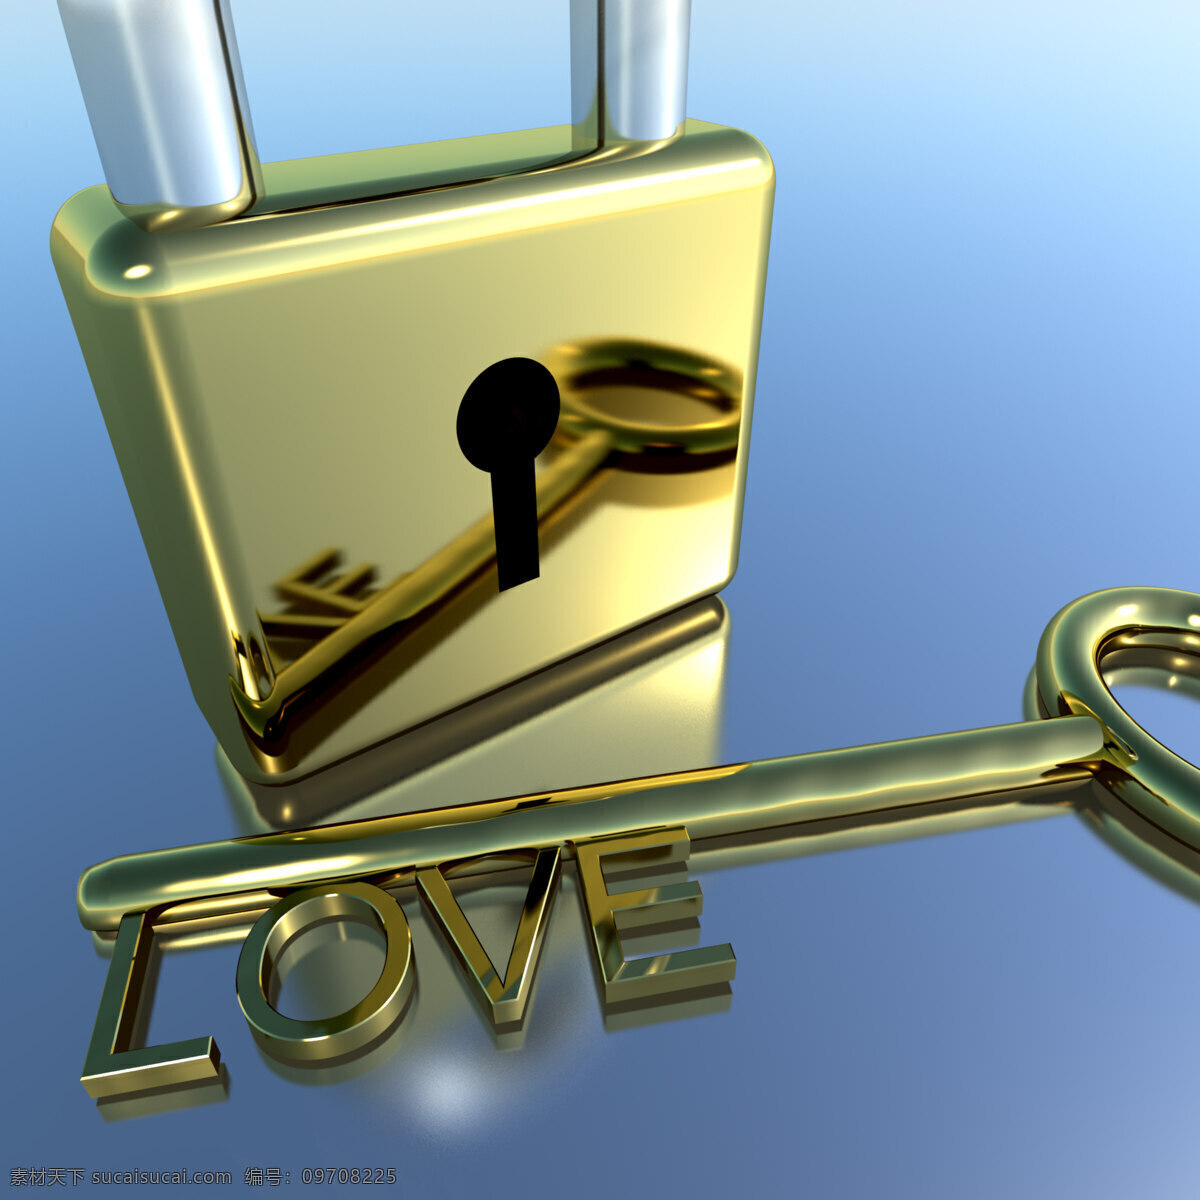 爱浪 漫 情人节 情人 挂锁 钥匙 显示 白色